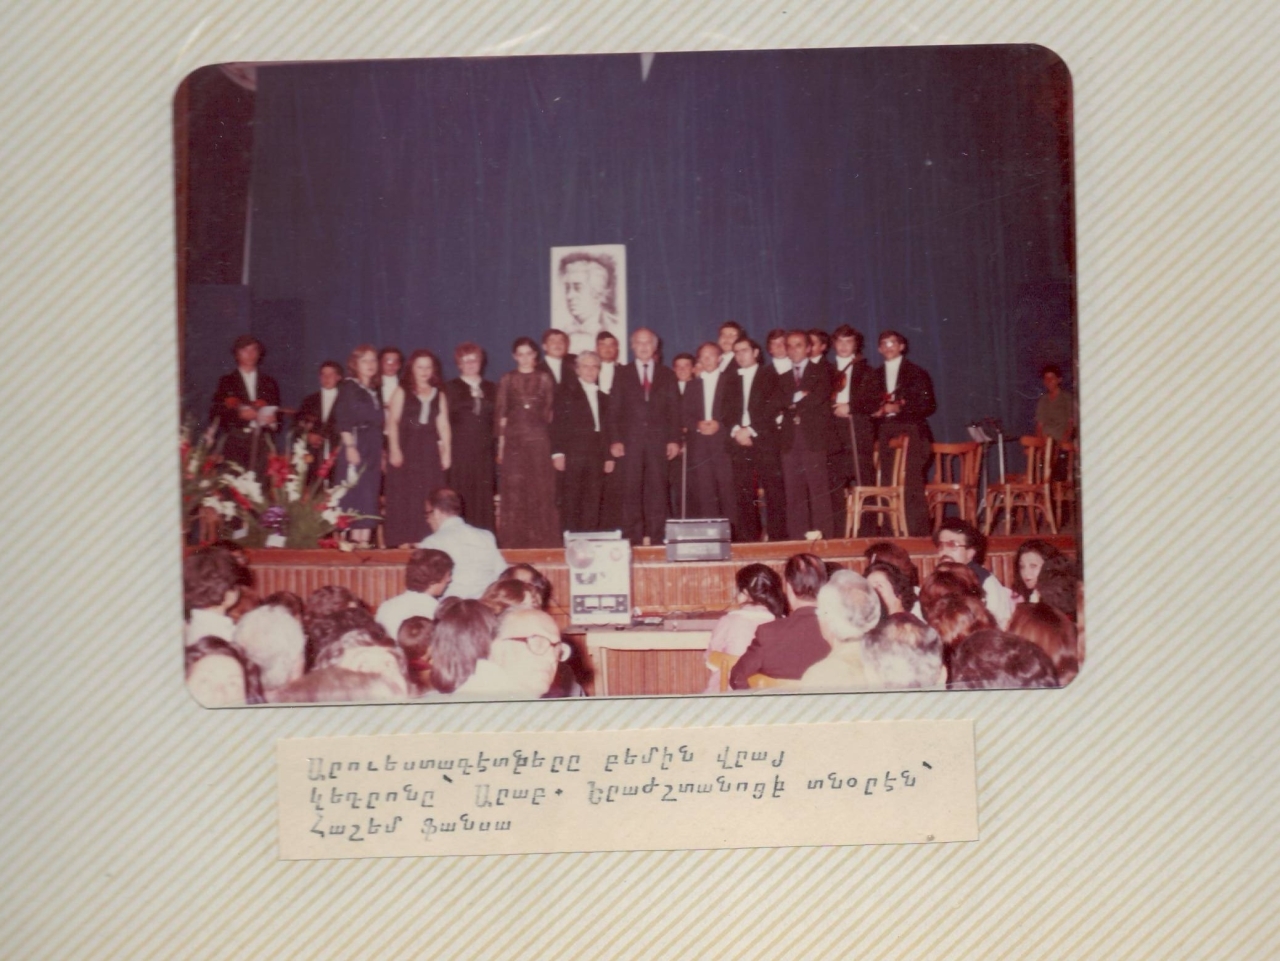 Լուսանկար՝ Սիրիայում Արամ Խաչատրյանի հիշատակին նվիրված համերգի հանդիսատեսը և համերգի մասնակիցները (համերգի լուսանկարների ալբոմից)